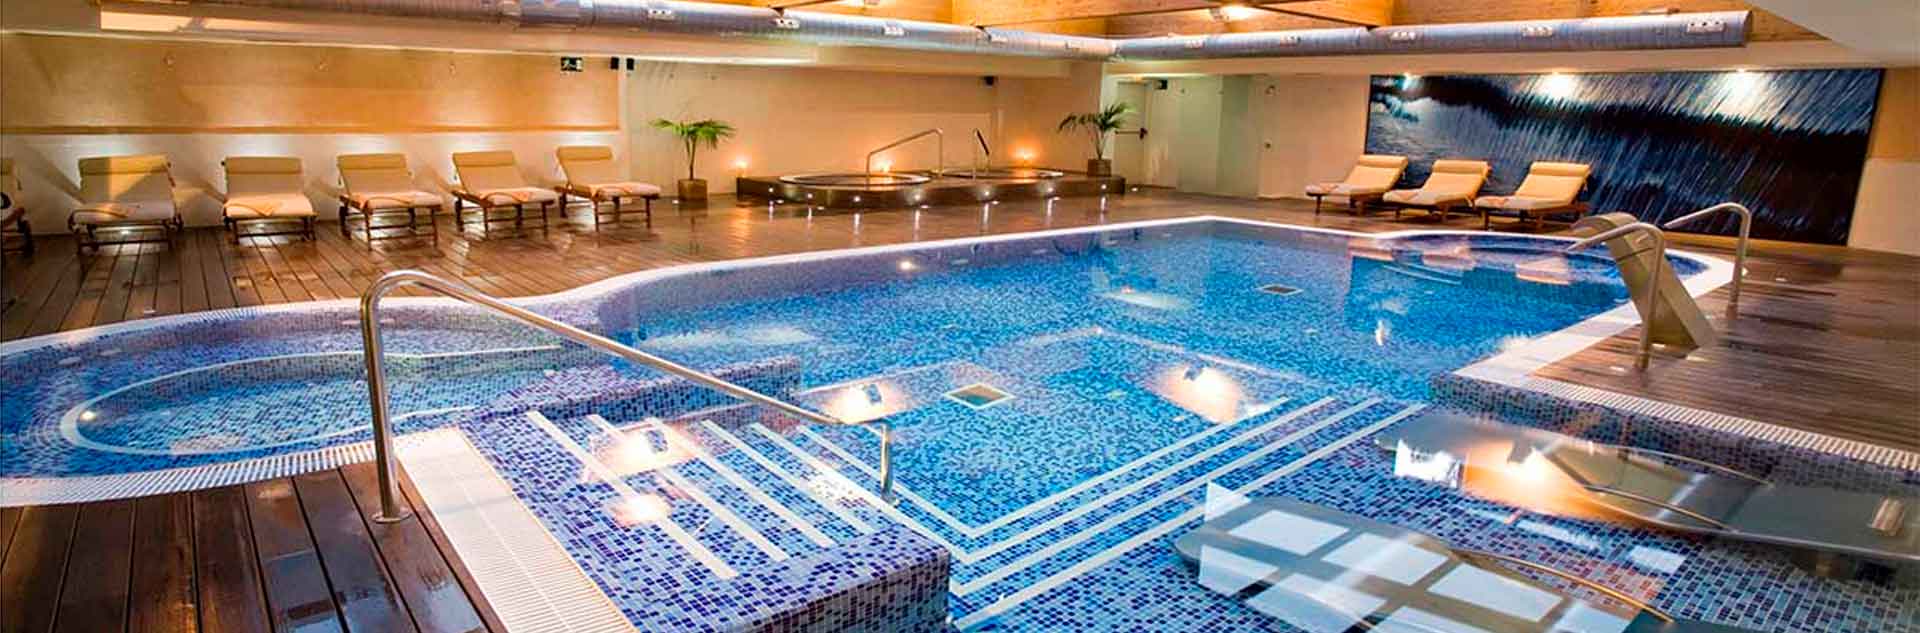 Oferta hotel + spa en Barcelona para 2 personas